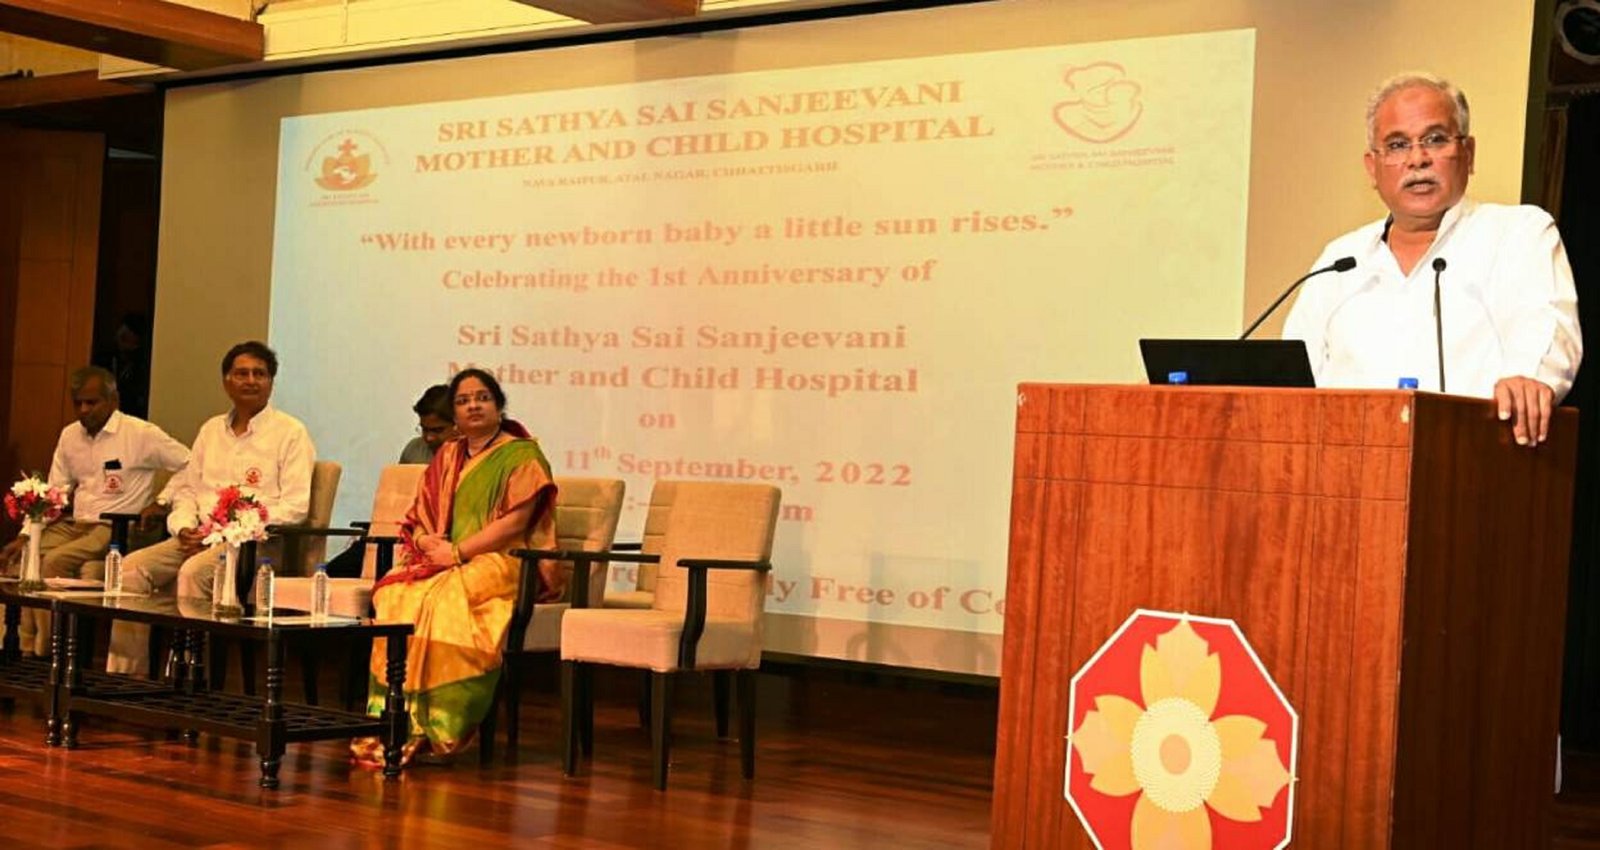  मानवता की सेवा में श्री सत्य सांई संजीवनी अस्पताल है बेमिसाल: मुख्यमंत्री बघेल